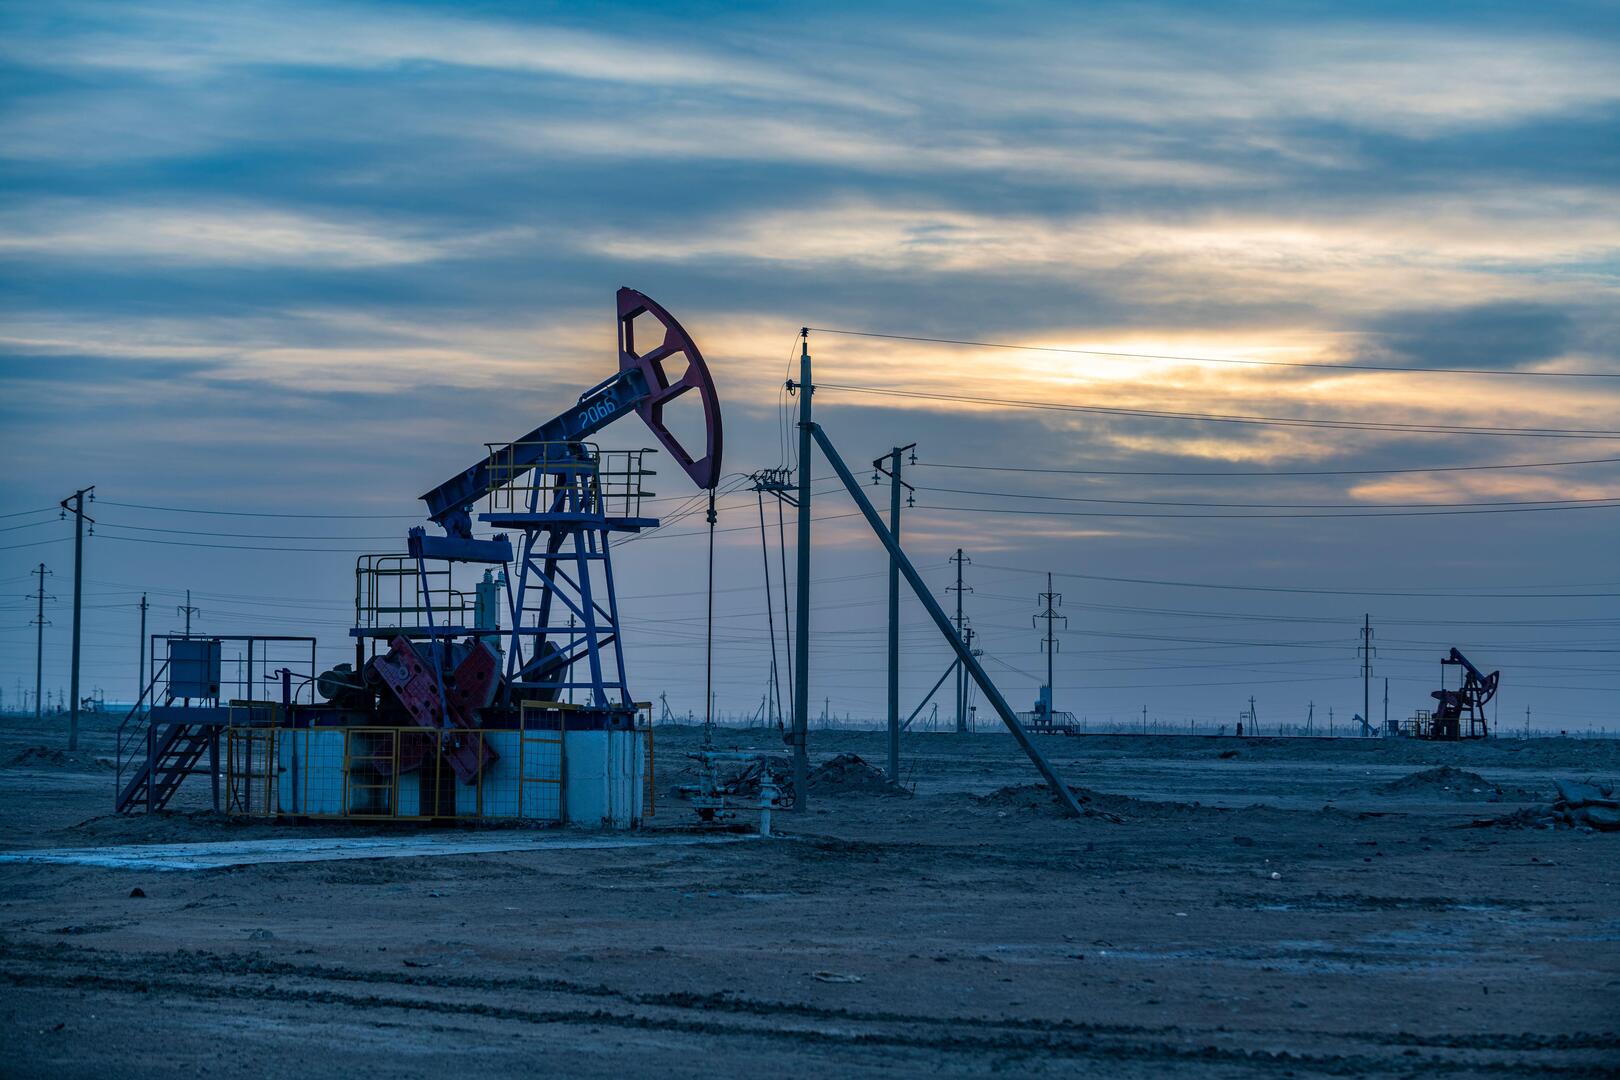 وسائل إعلام: واشنطن وحلفاؤها سيتفقون غدا على سقف سعر النفط الروسي بـ60-70 دولارا